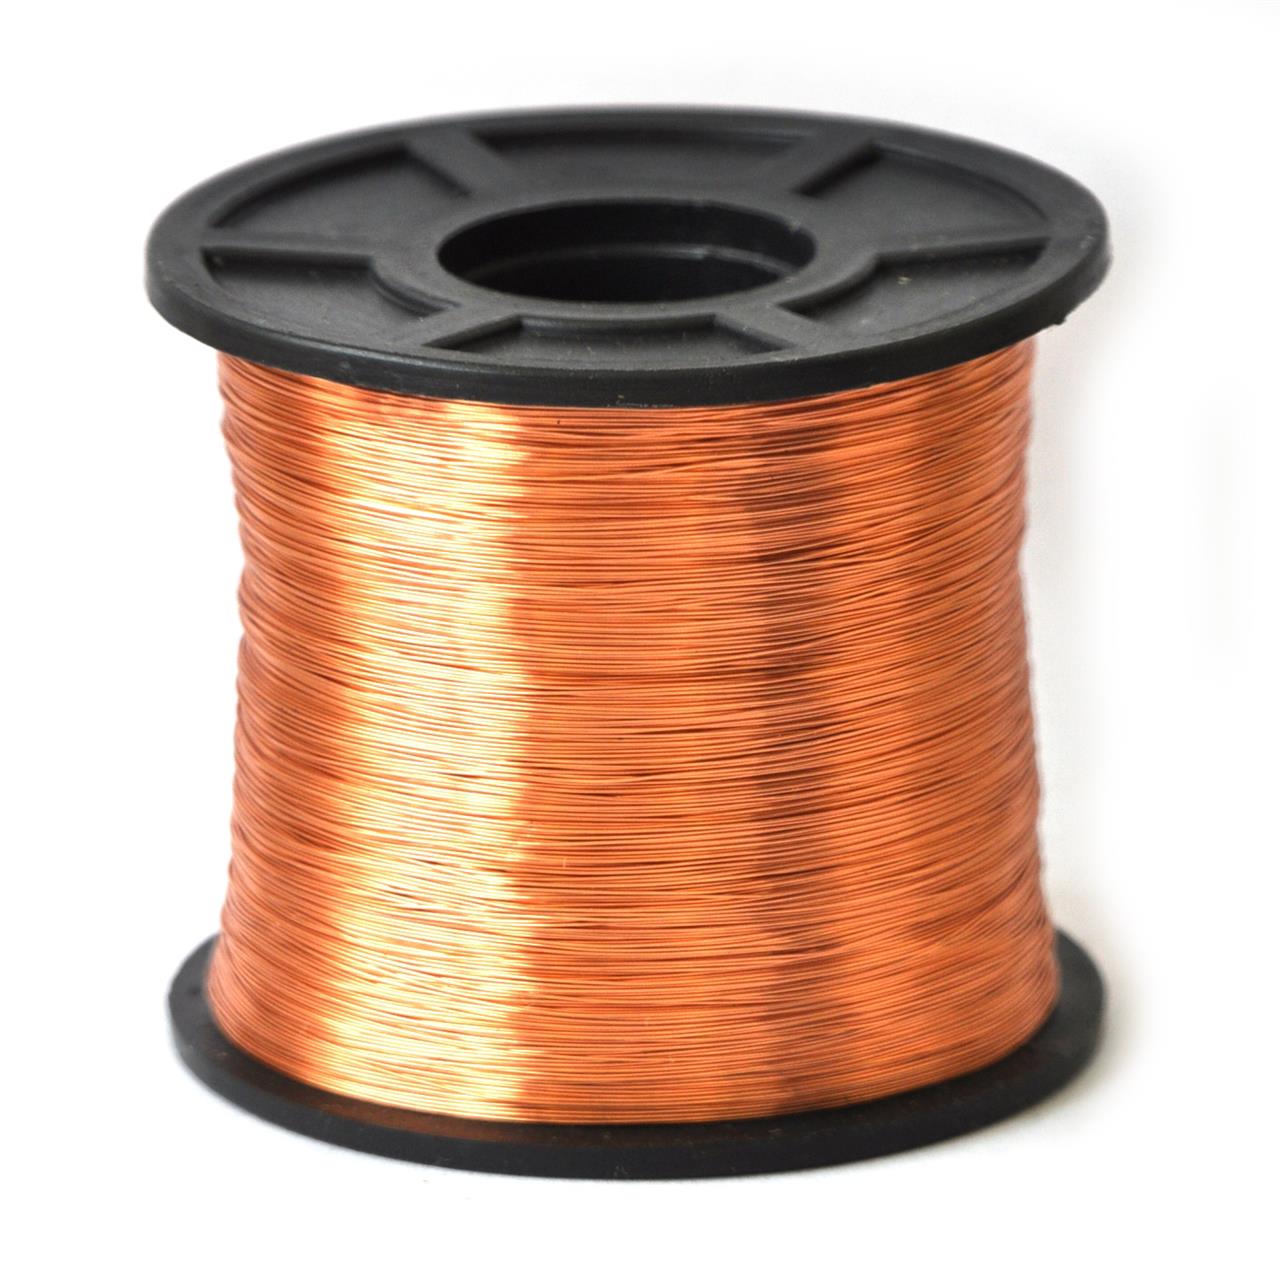 Fios de cobre esmaltados para bobinas, transformadores e indutores - Fio 30 AWG 500g